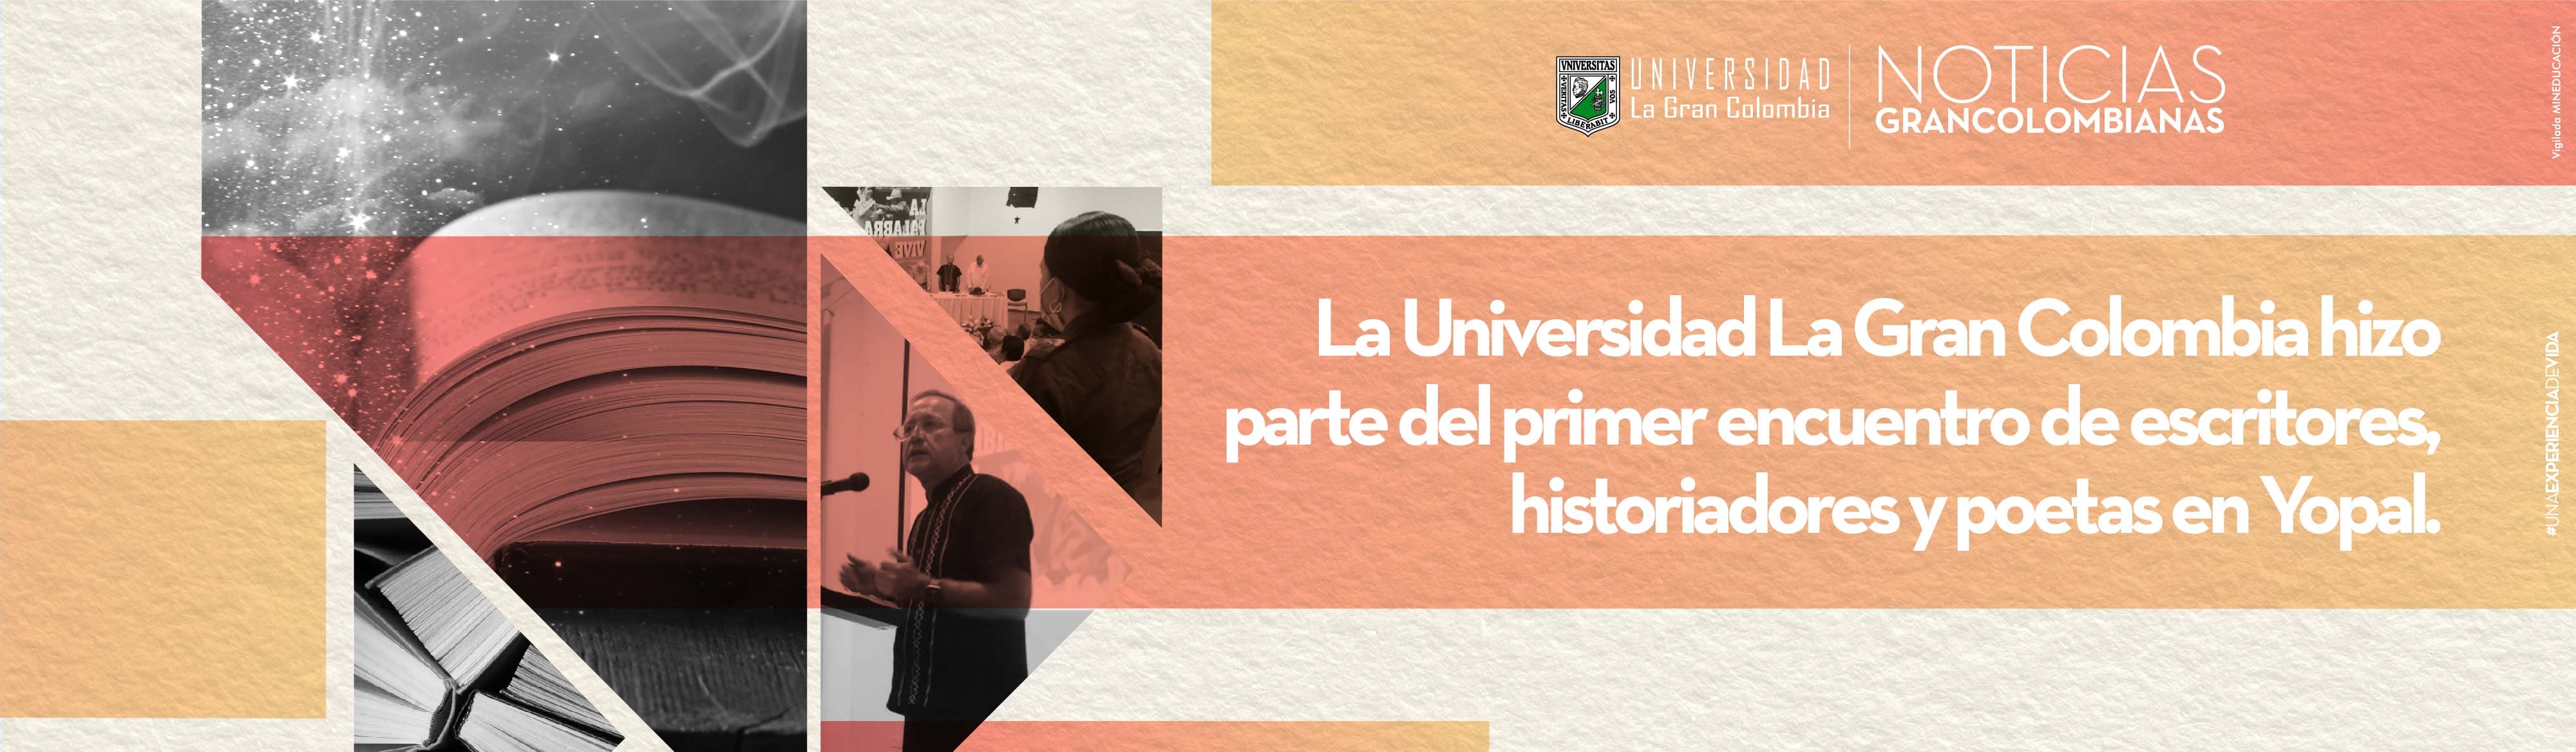 La Universidad La Gran Colombia hizo parte del primer encuentro de escritores, historiadores y poetas en Yopal